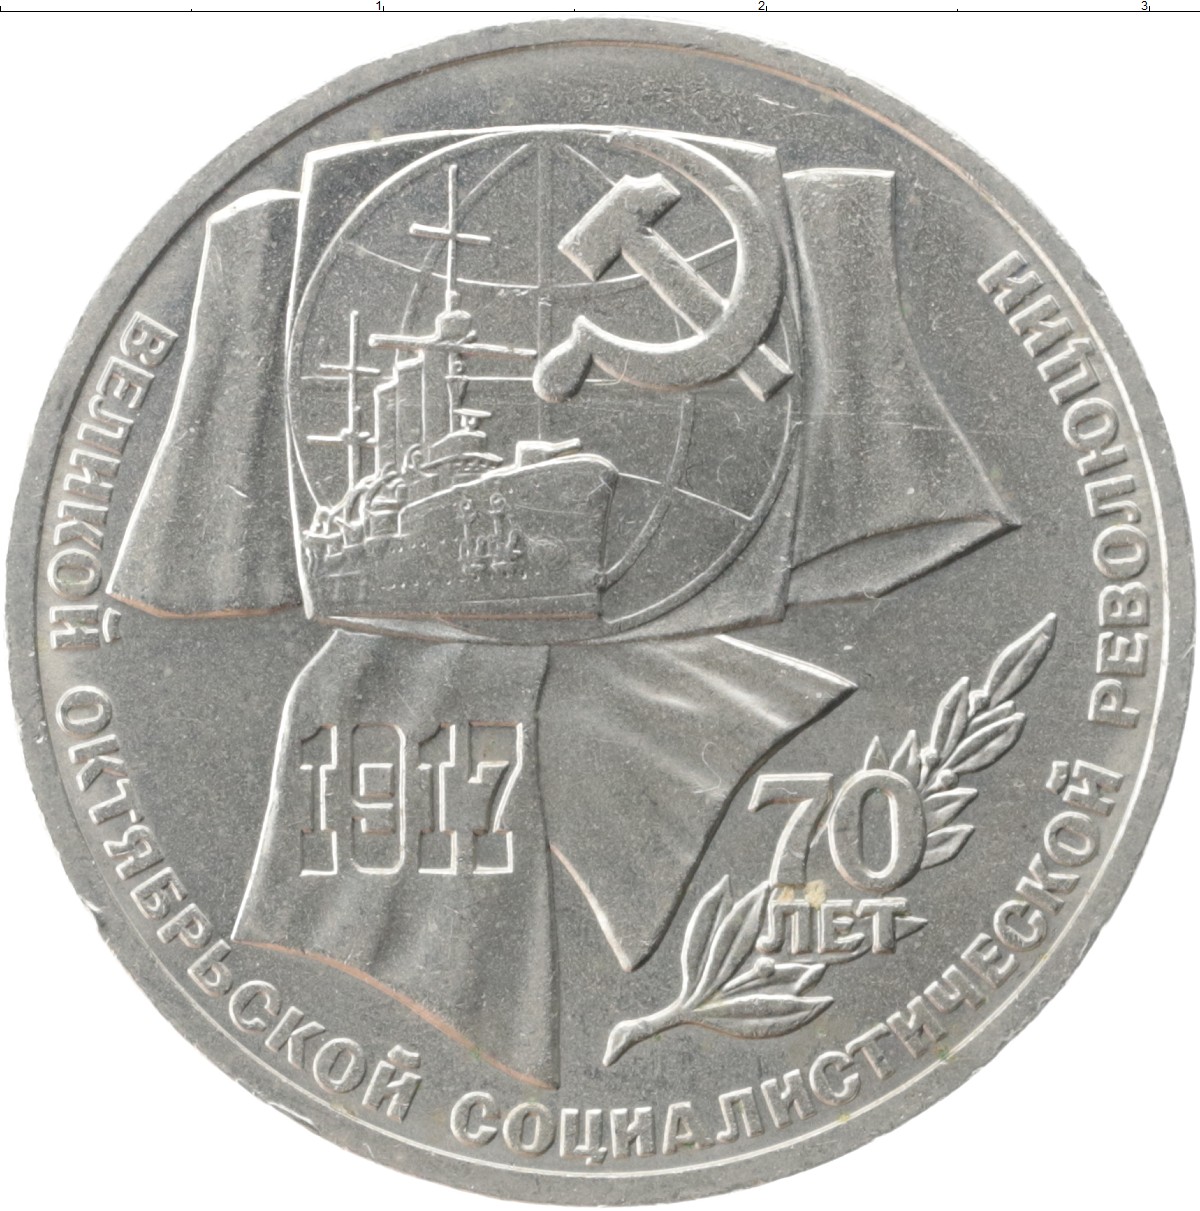 Октябрьская революция монета. 1 Рубль 1987 70 лет Великой Октябрьской социалистической революции. Монеты СССР 1919 года. Первые советские монеты 1919 года. Монета 70 лет Великой Октябрьской социалистической революции цена.